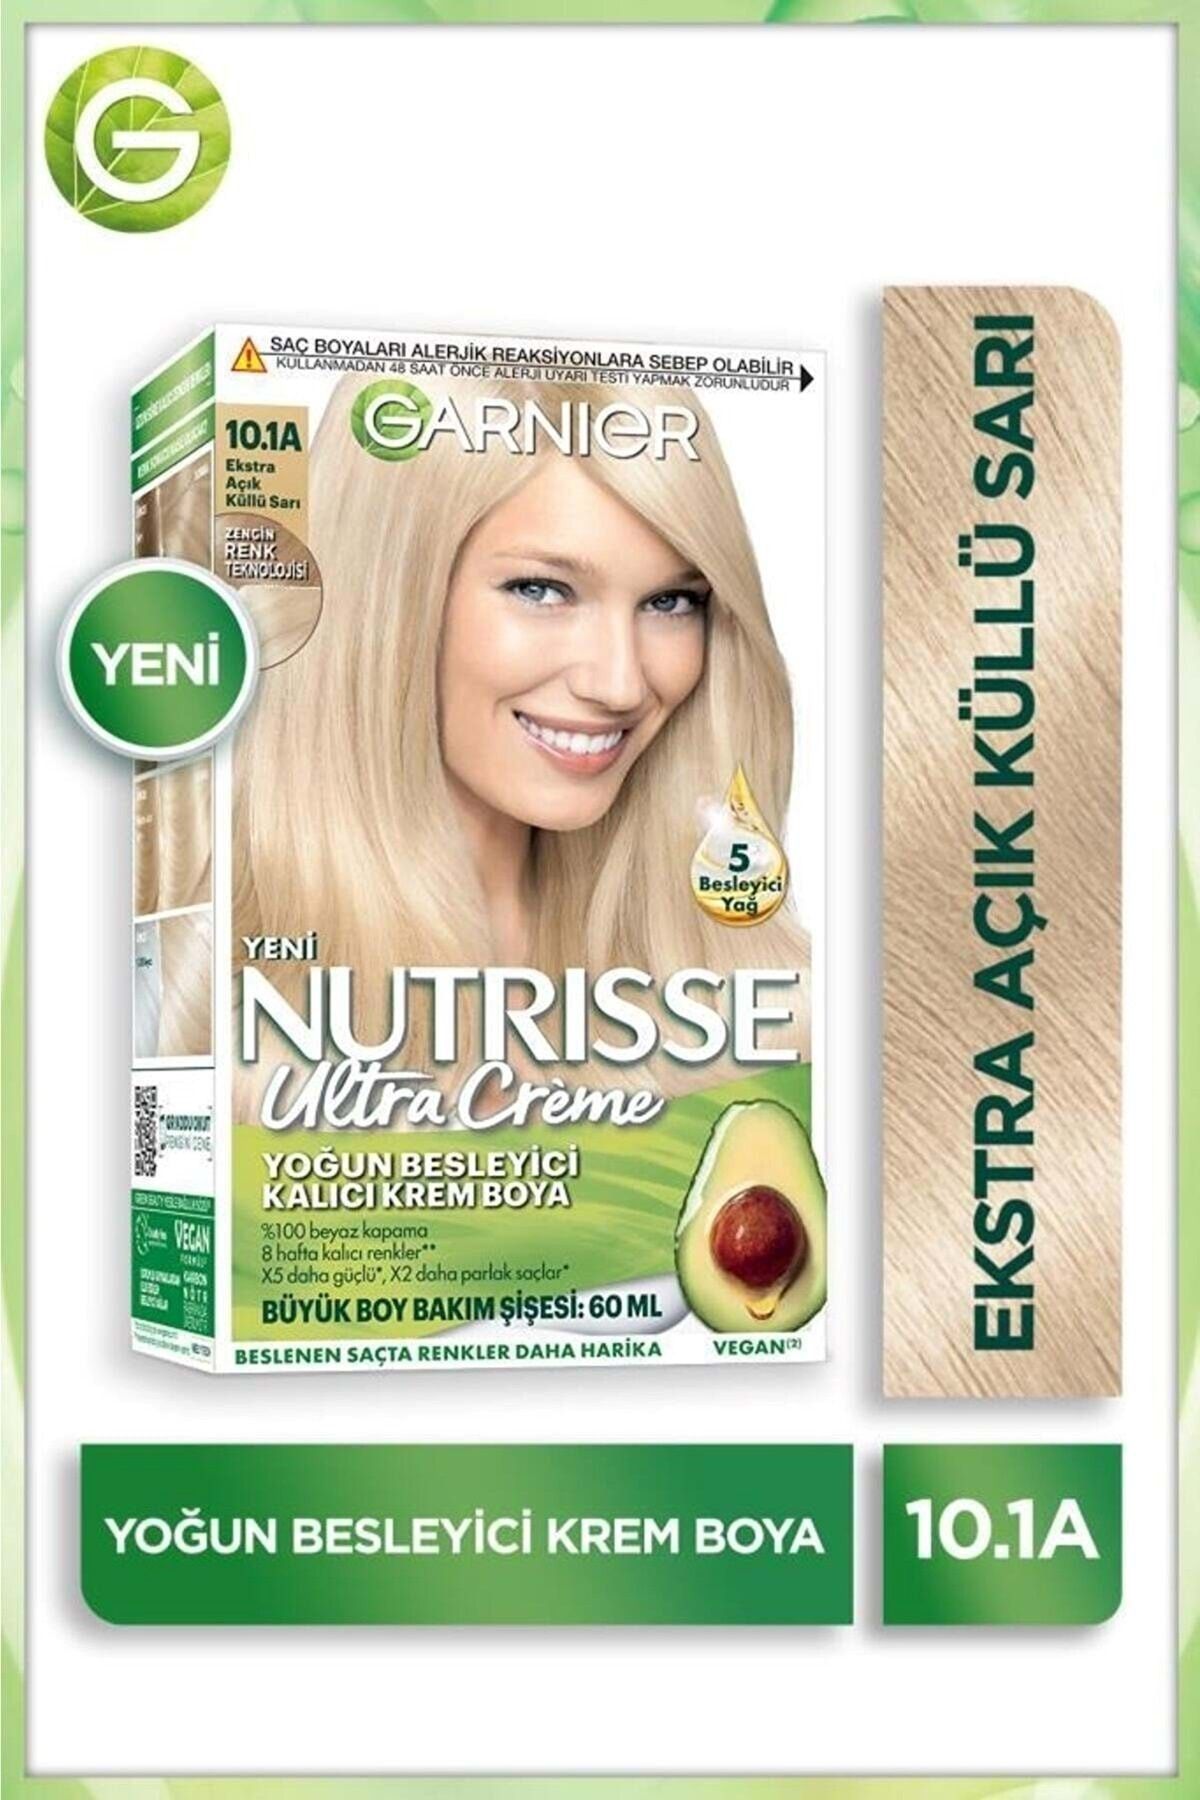 Garnier Nutrisse Yoğun Besleyici Kalıcı Krem Saç Boyası 10.1a Ekstra Açık Küllü Sarı